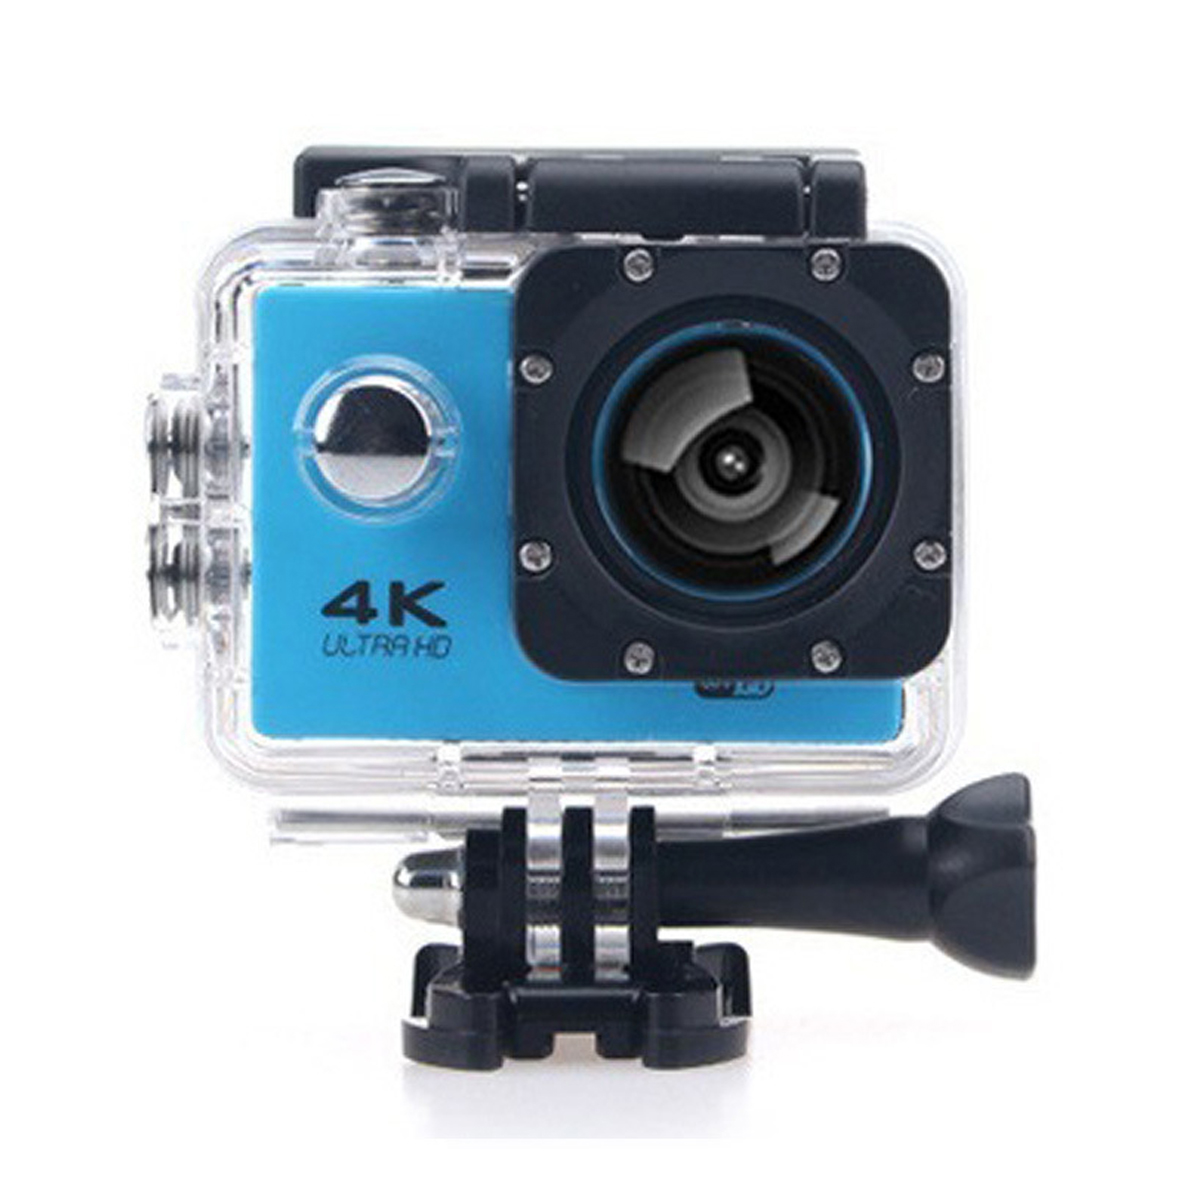 KINSI HD-Kameras,4K-Sportkameras,30m wasserdicht,WiFi-Synchronisation,Unterwasserkameras Action-Kamera